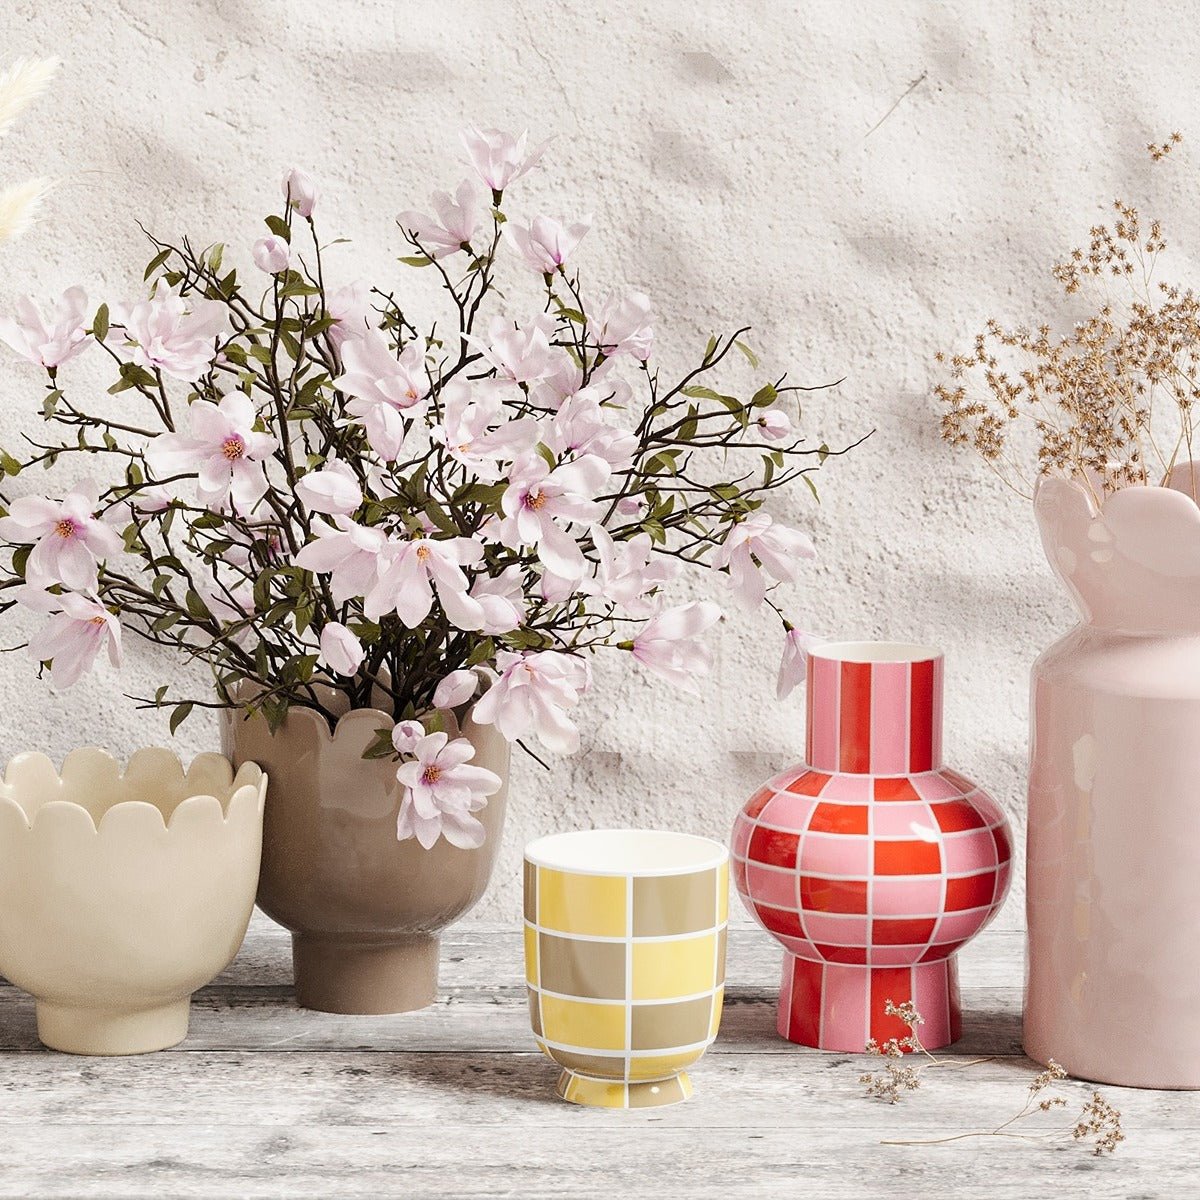 Quel cadeau choisir pour la fête des mères ou la Saint Valentin ? Le vase forme tulipe en céramique rose Marceau Potiron Paris